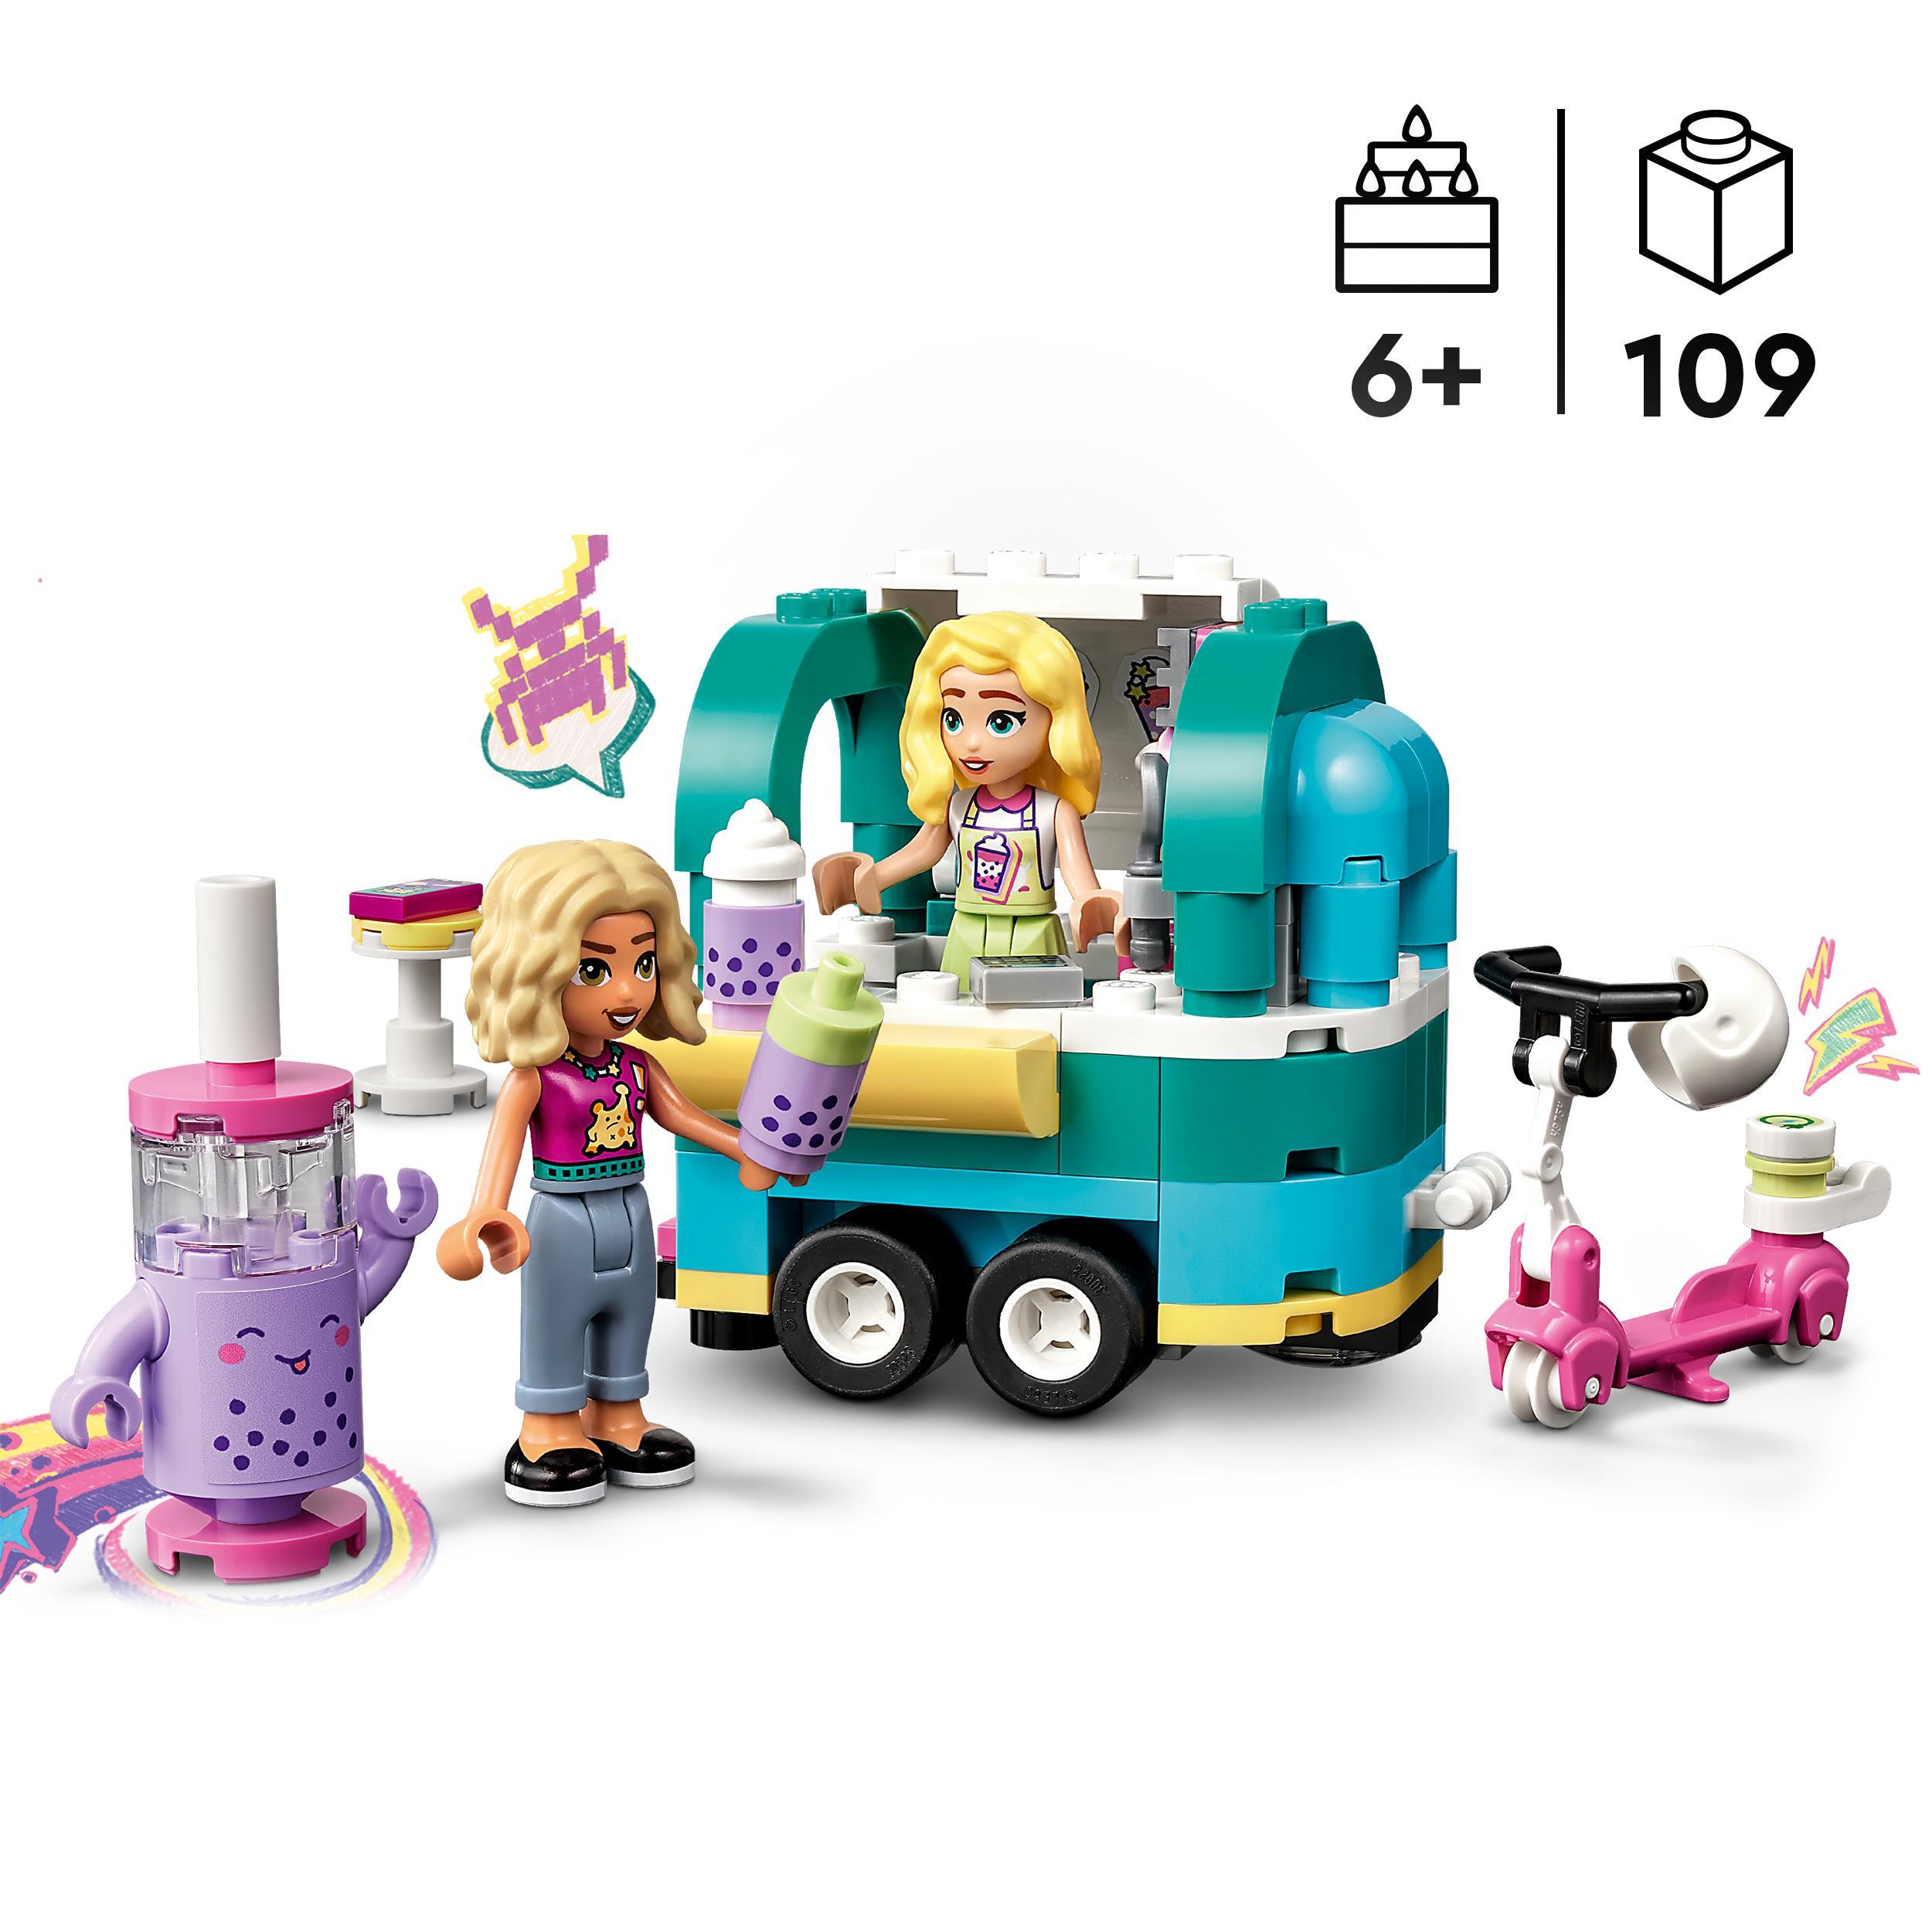 Lego friends 41733 negozio mobile di bubble tea, giocattolo per bambini 6+ con monopattino e mini bamboline nova e matilde - LEGO FRIENDS